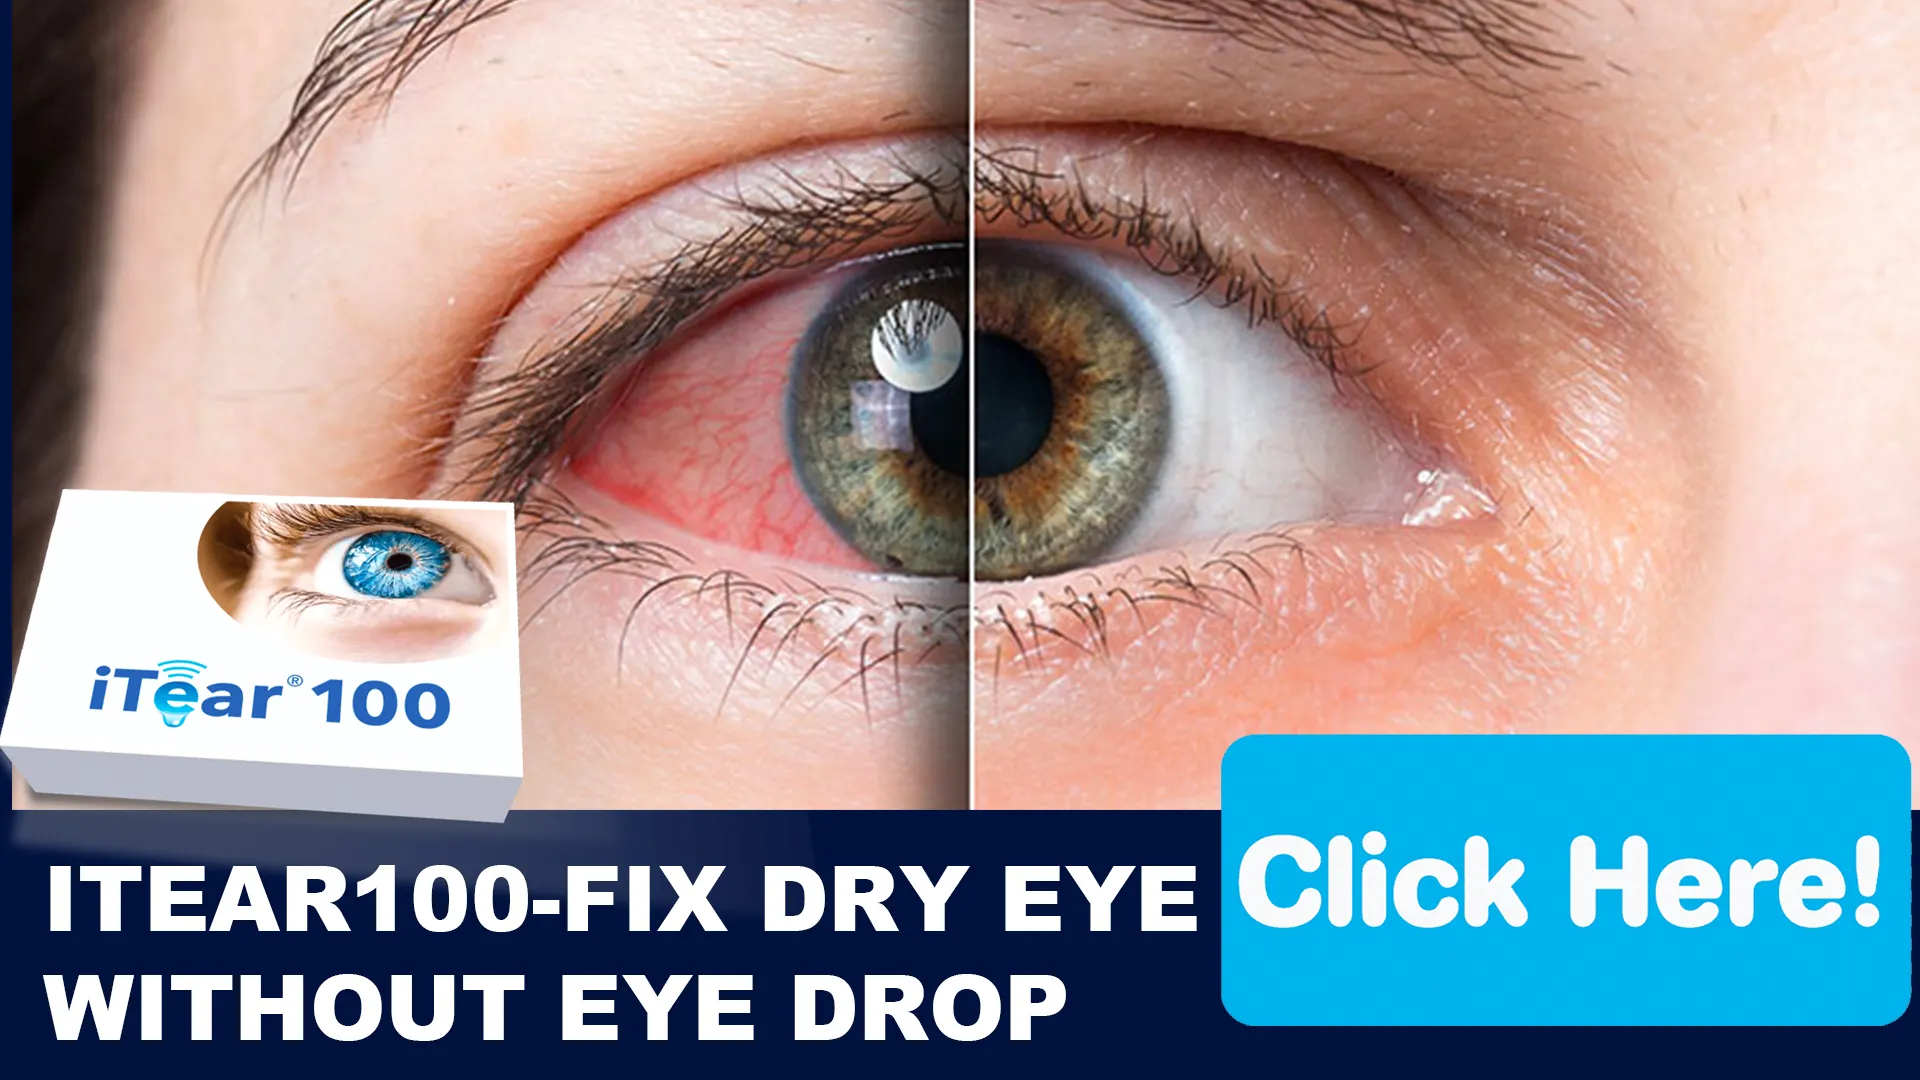 iTear100: Breaking Ground in Eye Care